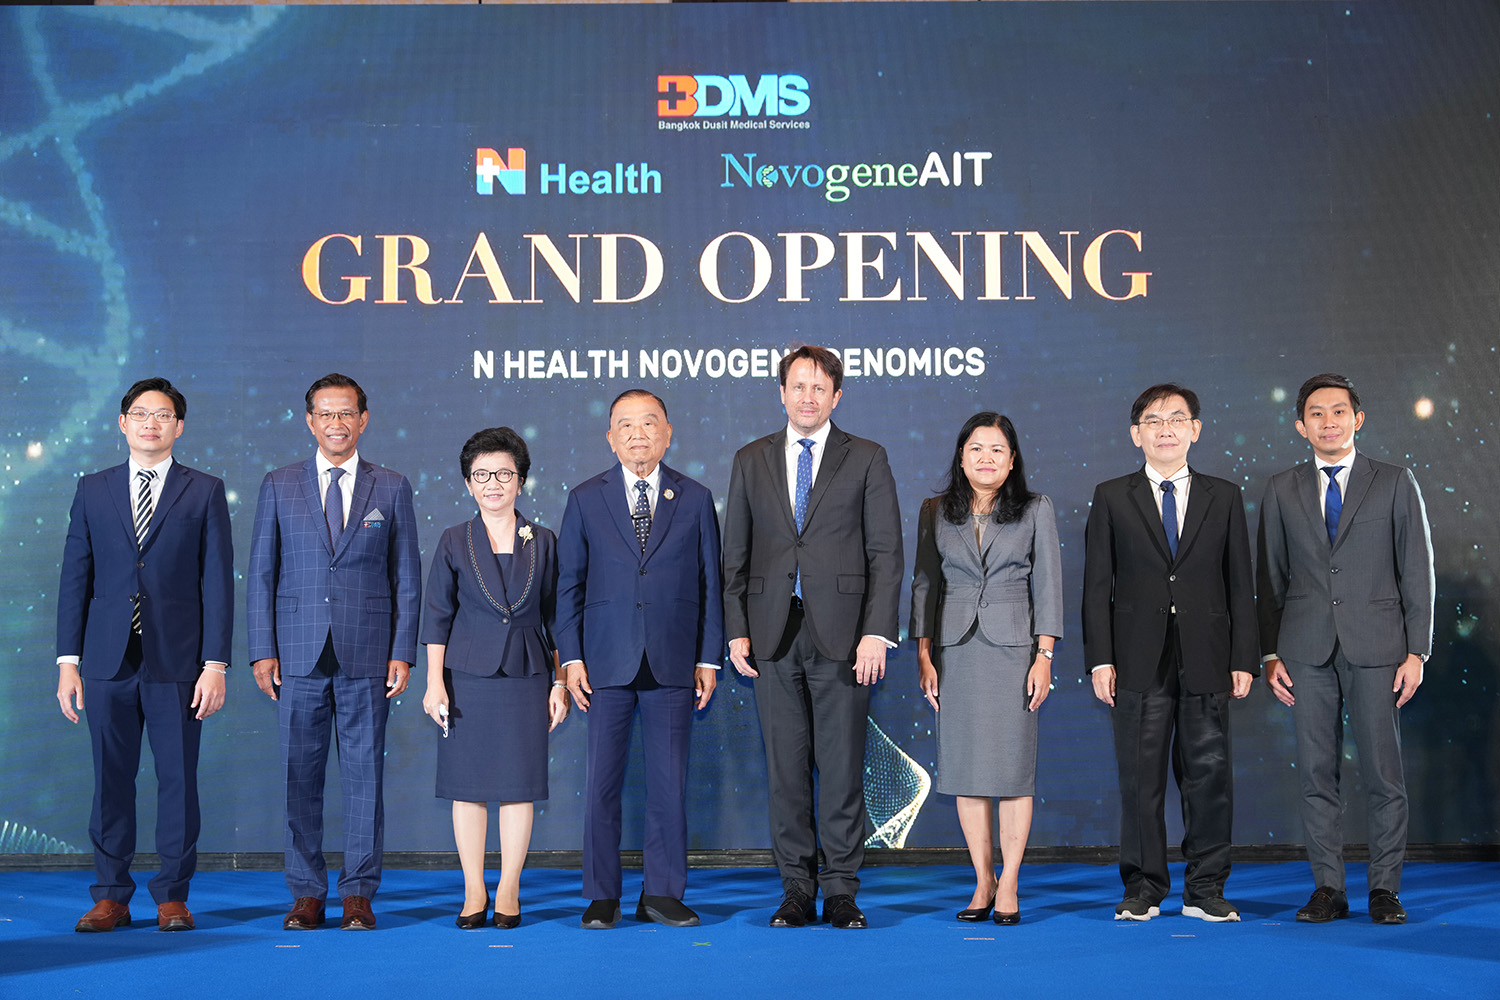 BDMS เปิด ‘N Health Novogene Genomics ศูนย์การแพทย์จีโนมิกส์’พัฒนาเทคโนโลยีถอดรหัสพันธุกรรม ขานรับยุทธศาสตร์ชาติ ตั้งเป้าสู่ Genetic Center แห่งเอเชียตะวันออกเฉียงใต้